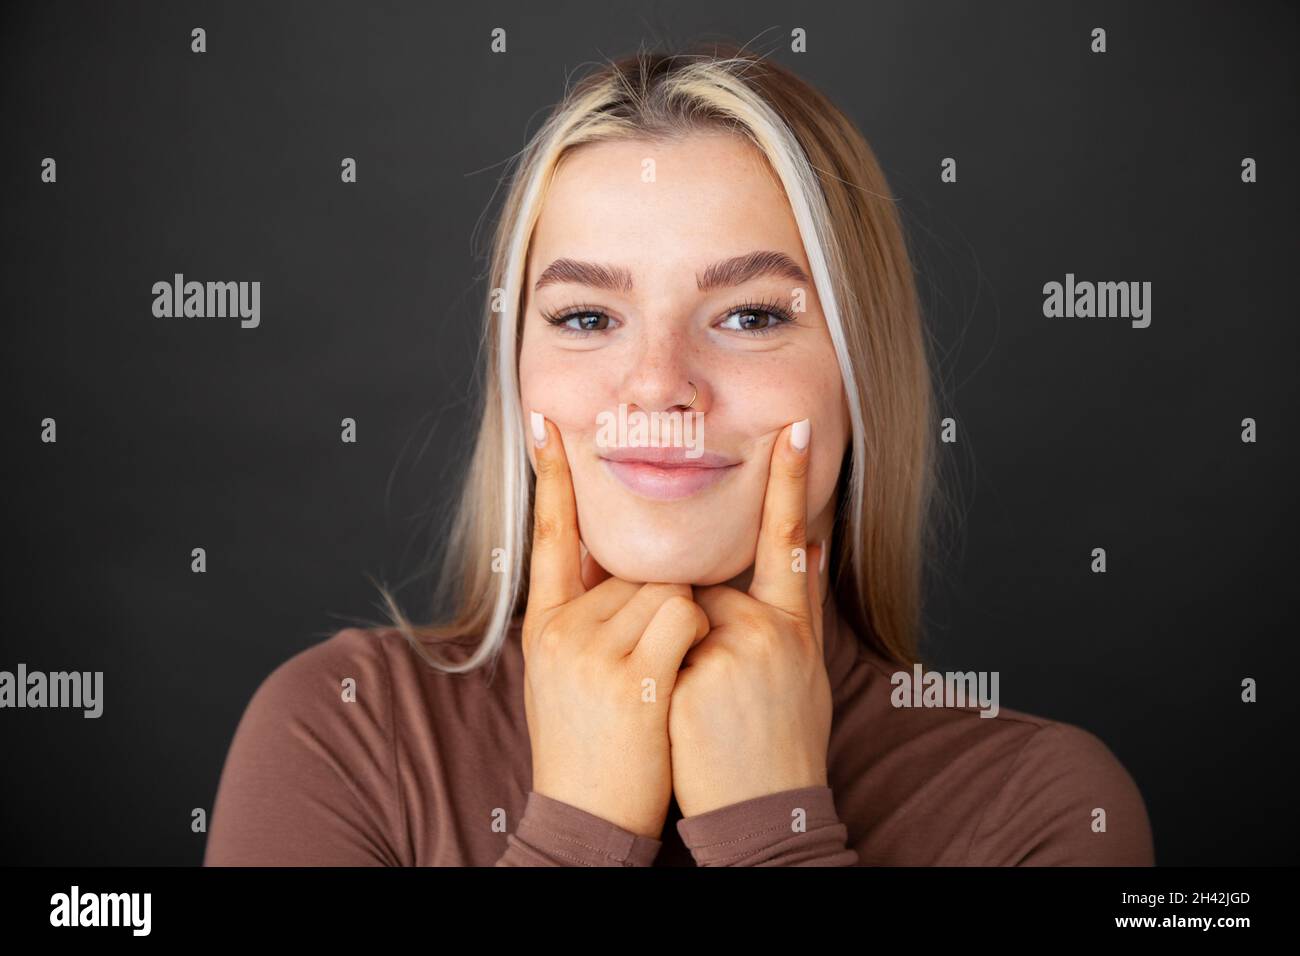 Porträt einer jungen Frau, die ihre Finger in ihre Wangen drückt und sie zum Lächeln bringt Stockfoto